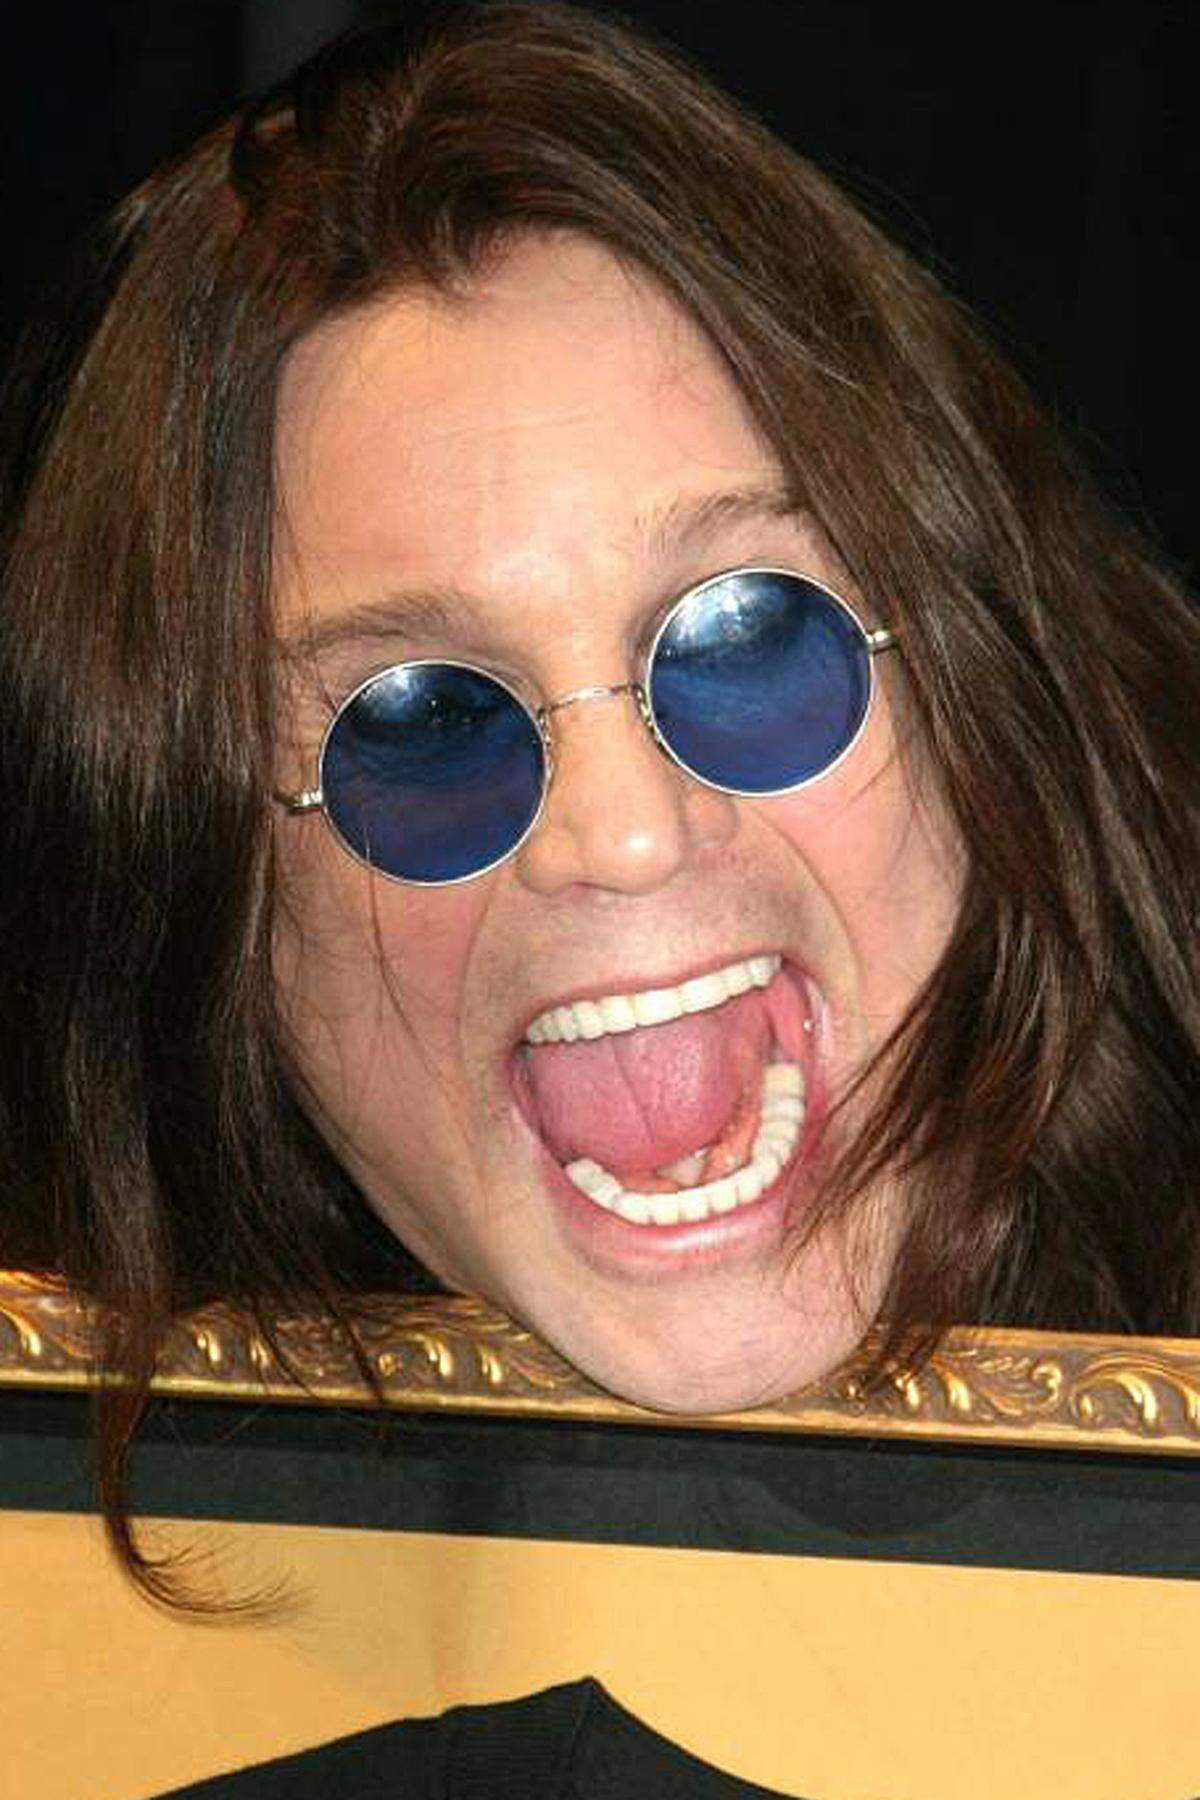 Jeder Generation ihr Ozzy-Bezug: Die einen kennen ihn schon als hardrockenden Fledermaus-Beißer und Black Sabbath-Frontmann, die anderen als Balladen-Onkel ("Dreamer"), TV-Junkies aus der Reality-Soap "The Osbournes". Am 3. Dezember wird John Michael Osbourne alias Ozzy Osbourne 70 Jahre alt. Einige Höhen und Tiefen seines Lebens: